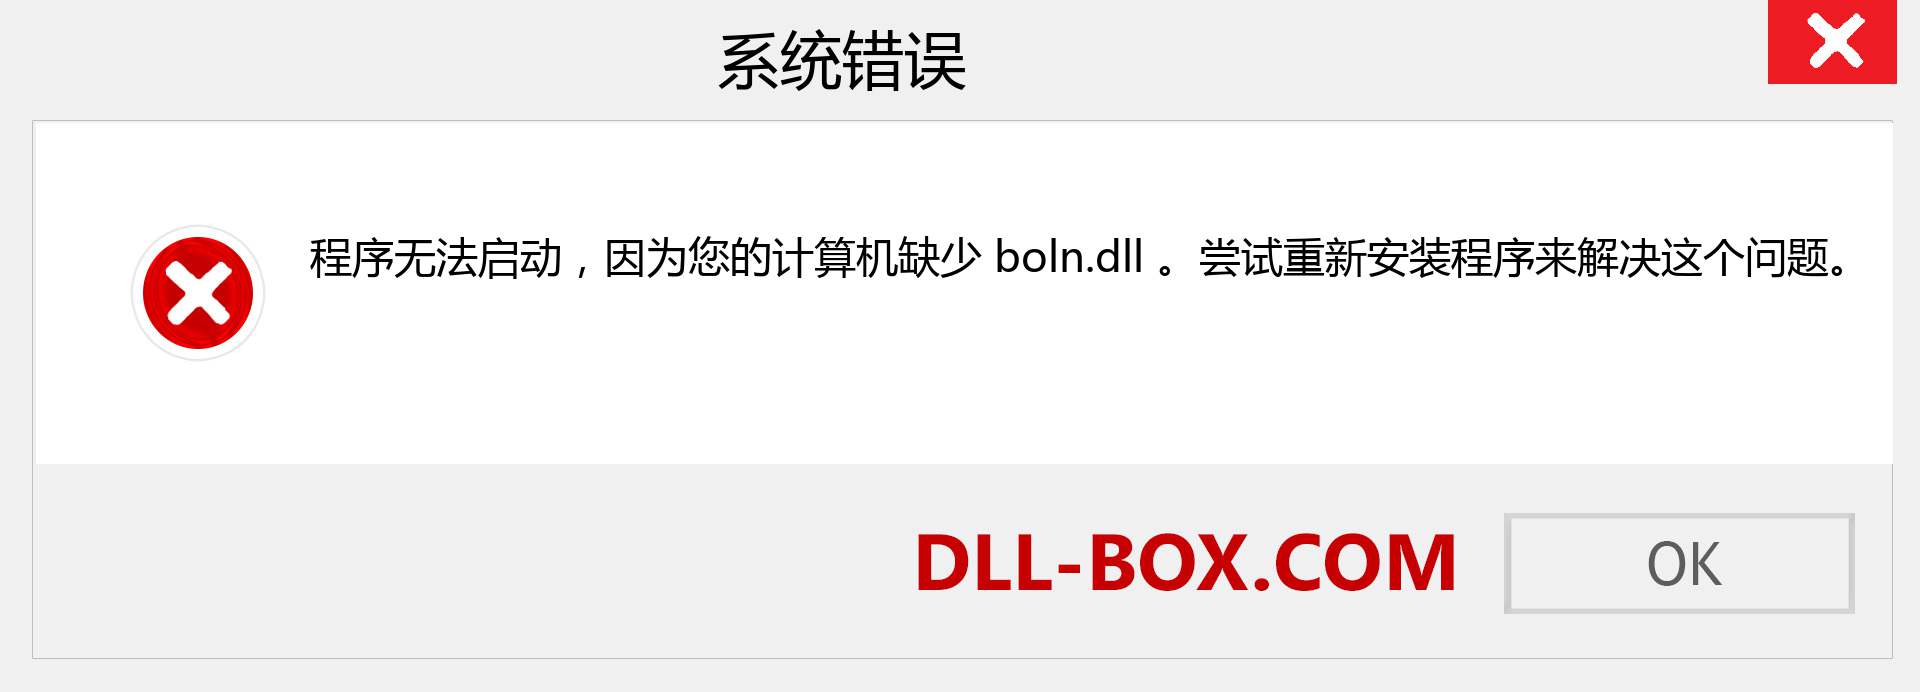 boln.dll 文件丢失？。 适用于 Windows 7、8、10 的下载 - 修复 Windows、照片、图像上的 boln dll 丢失错误